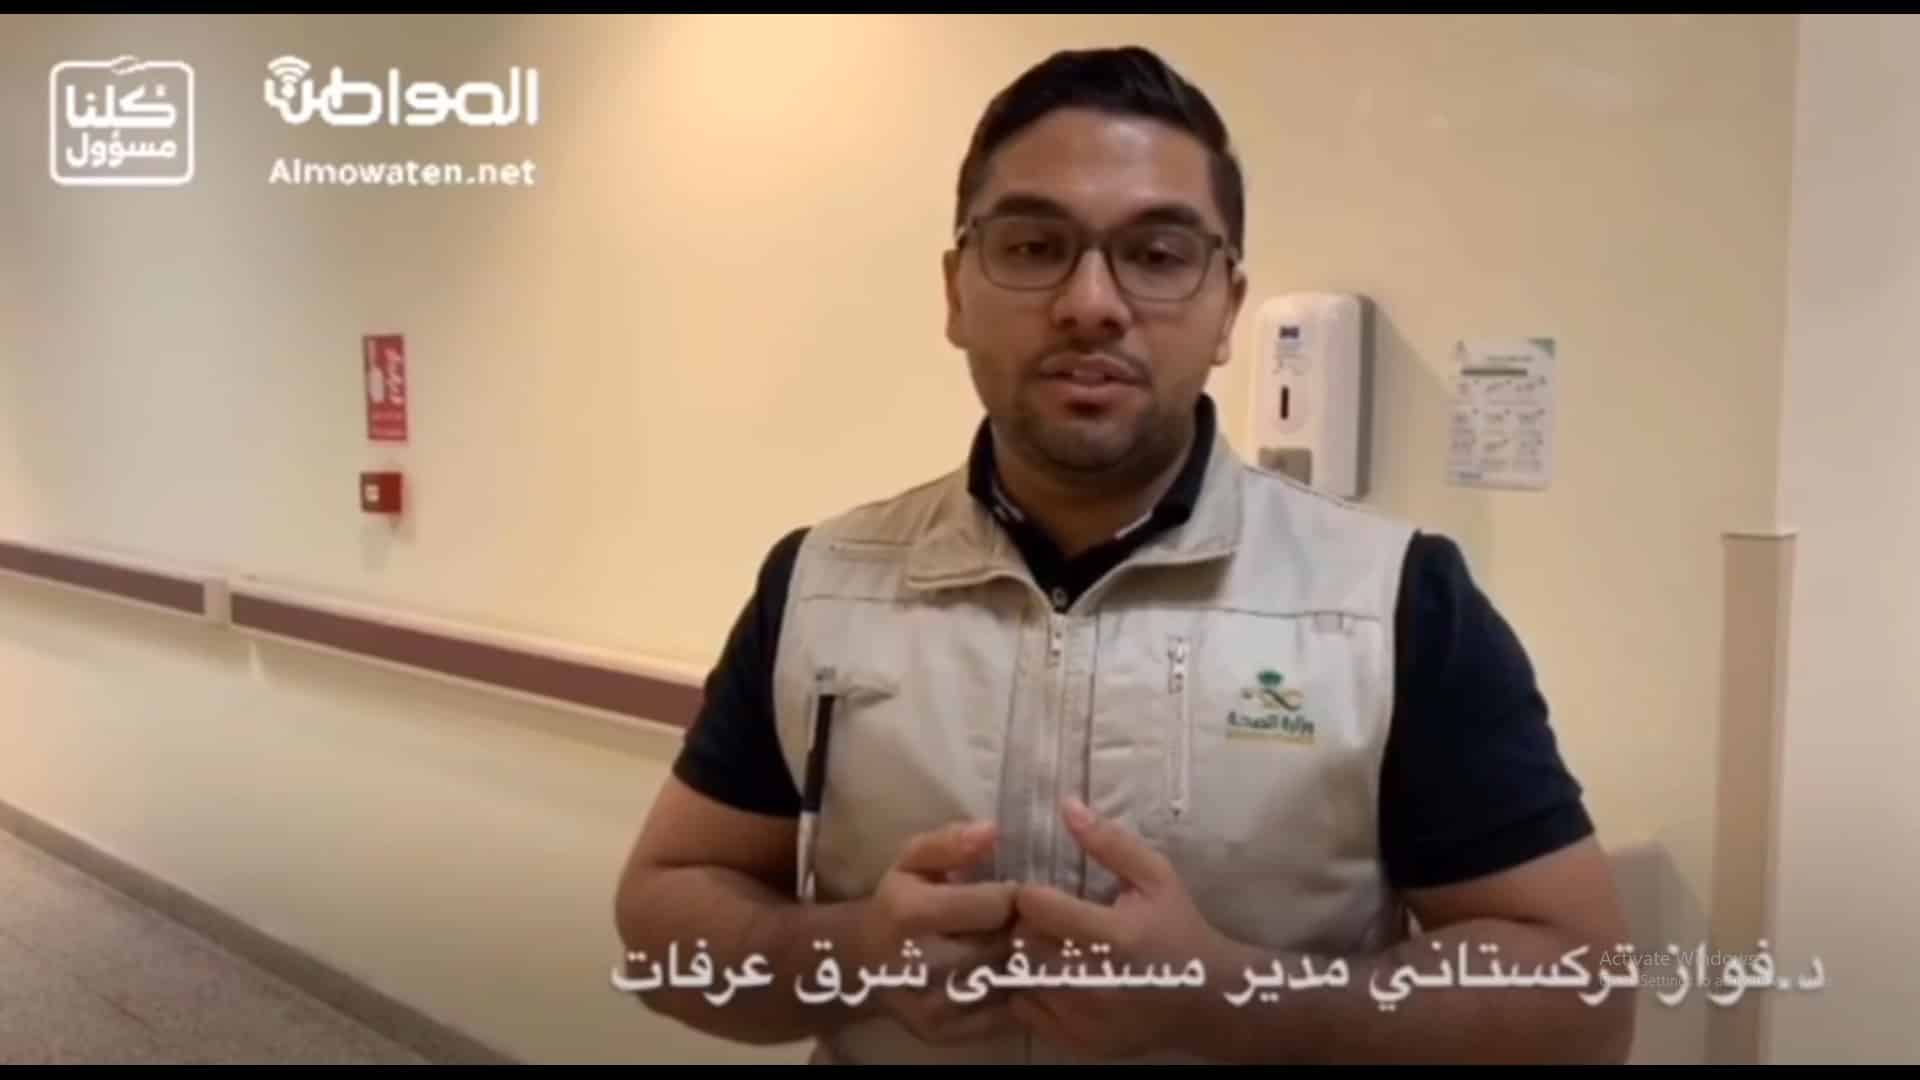 فيديو.. تقنية جديدة في مستشفى شرق عرفات لحماية الممارسين من كورونا